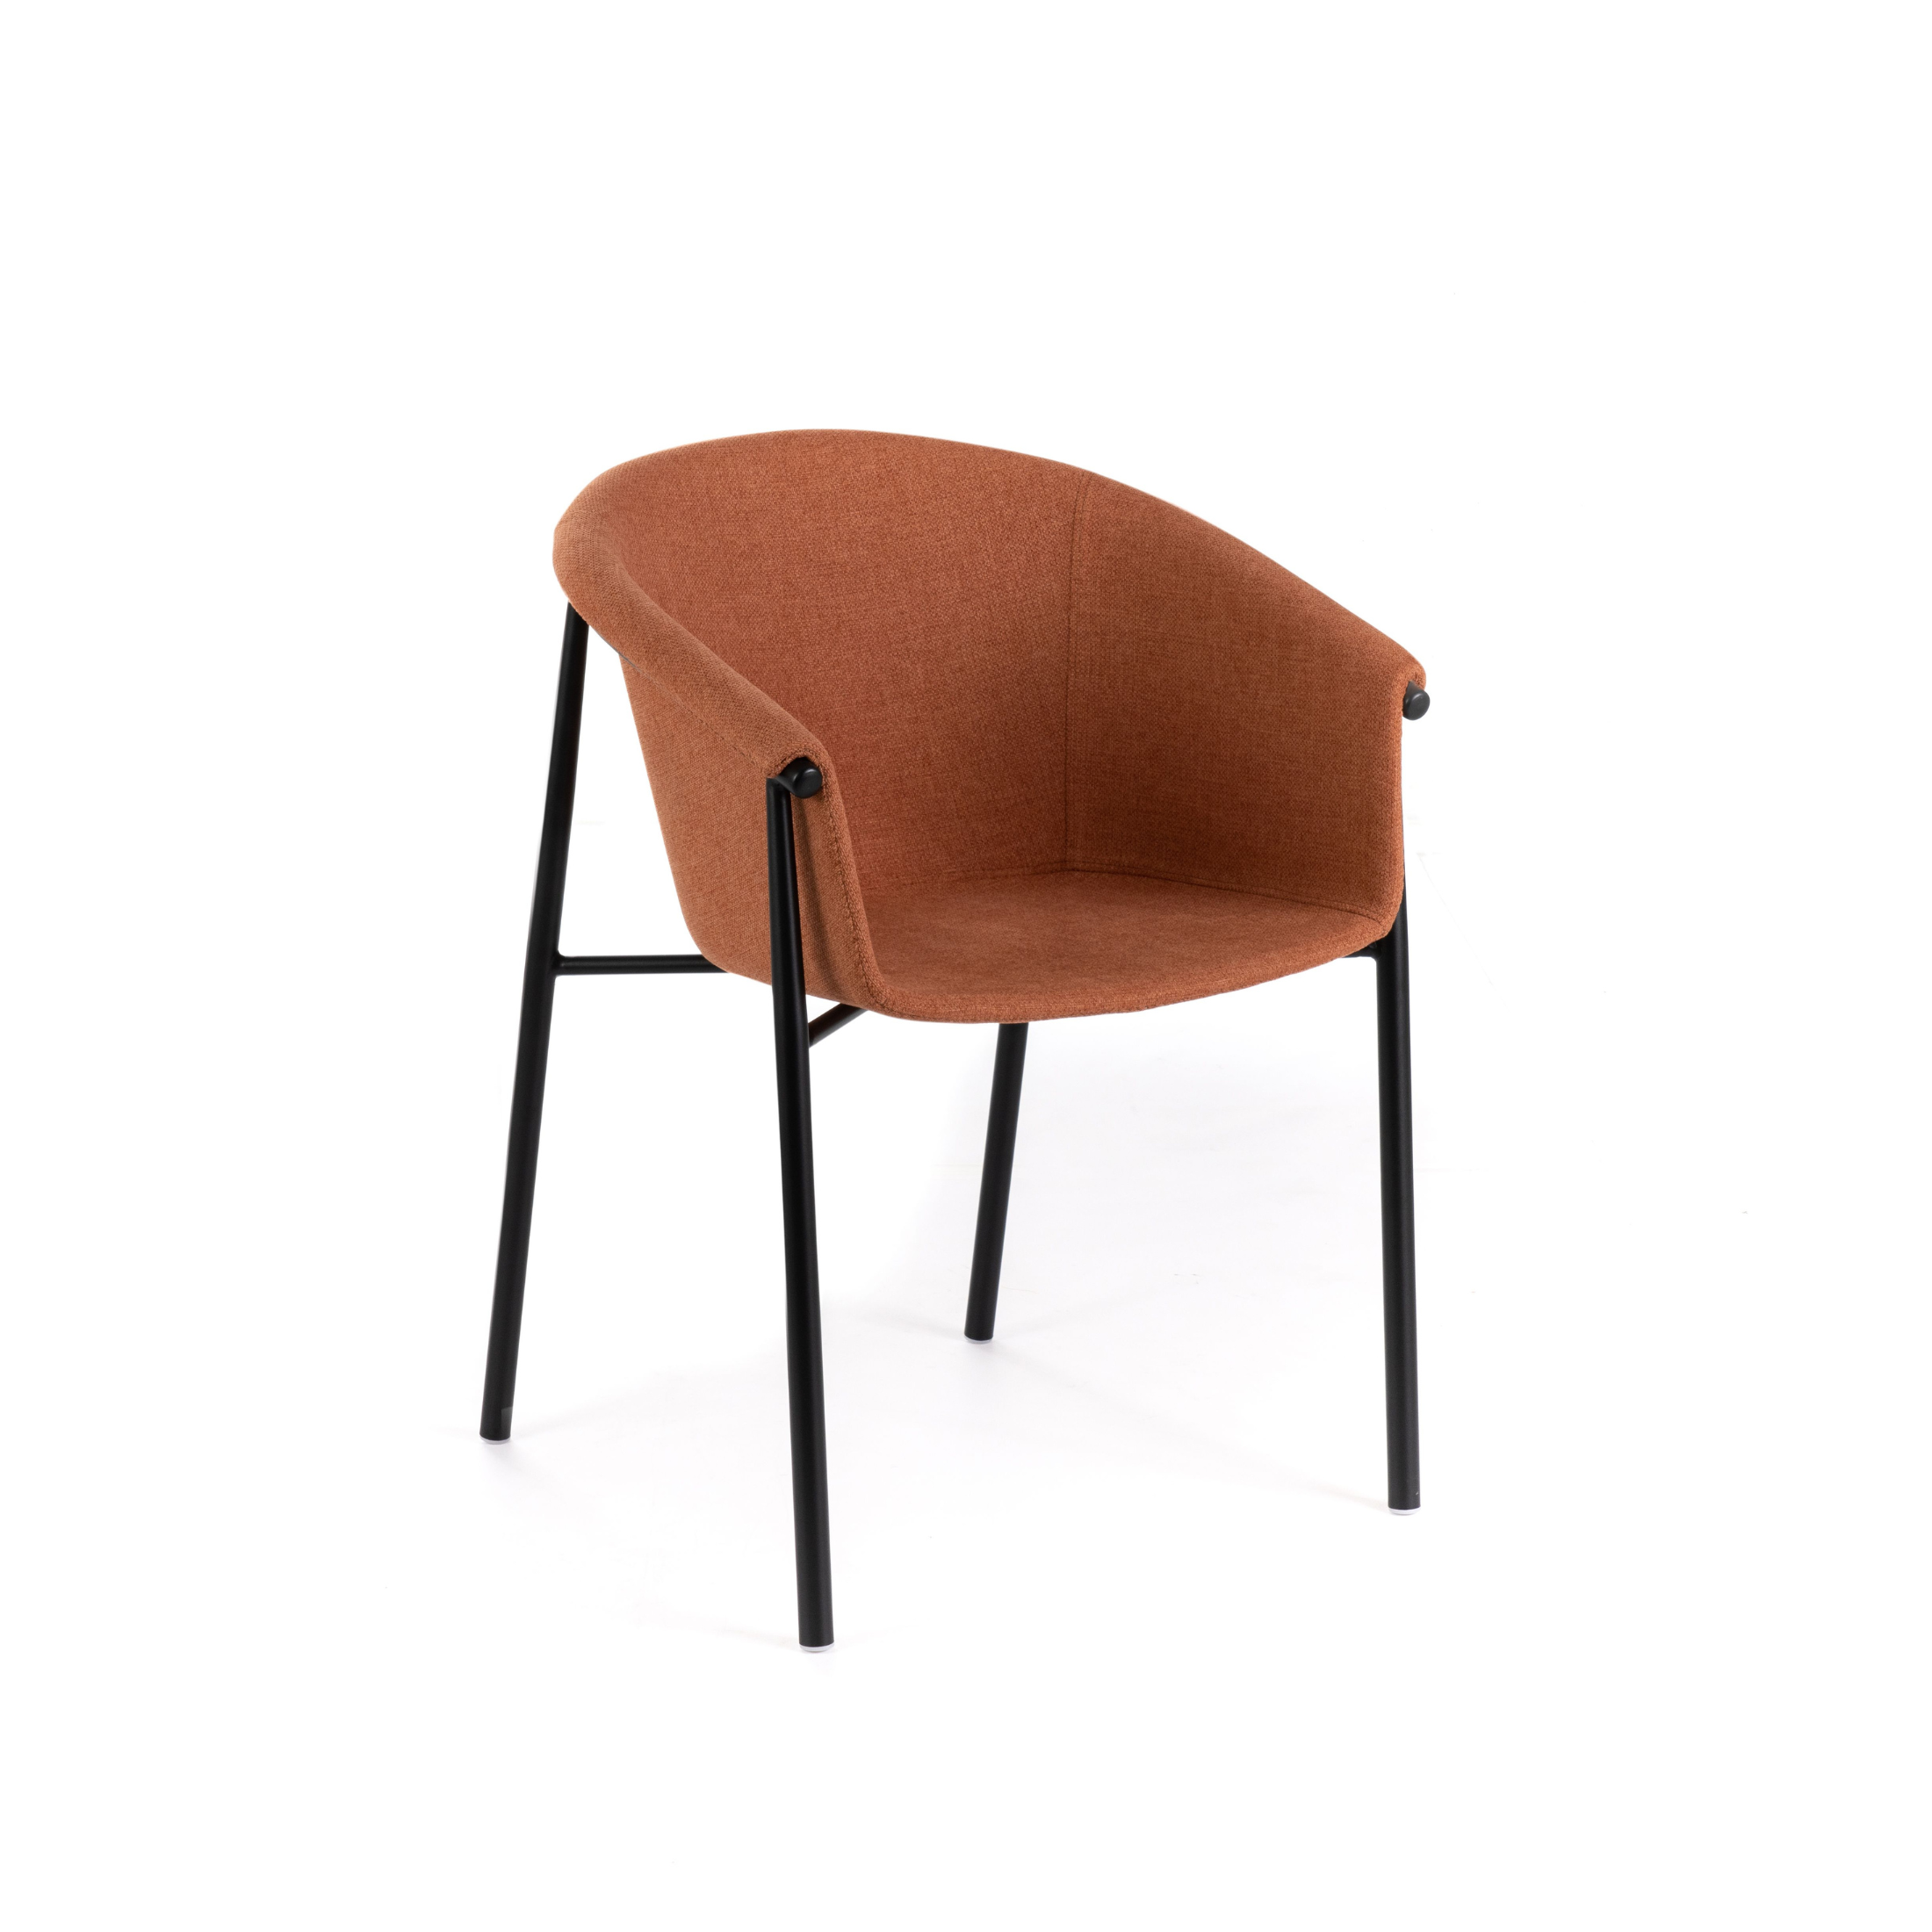 Set sedie moderne in tessuto "Nari" eleganti con struttura in metallo verniciato